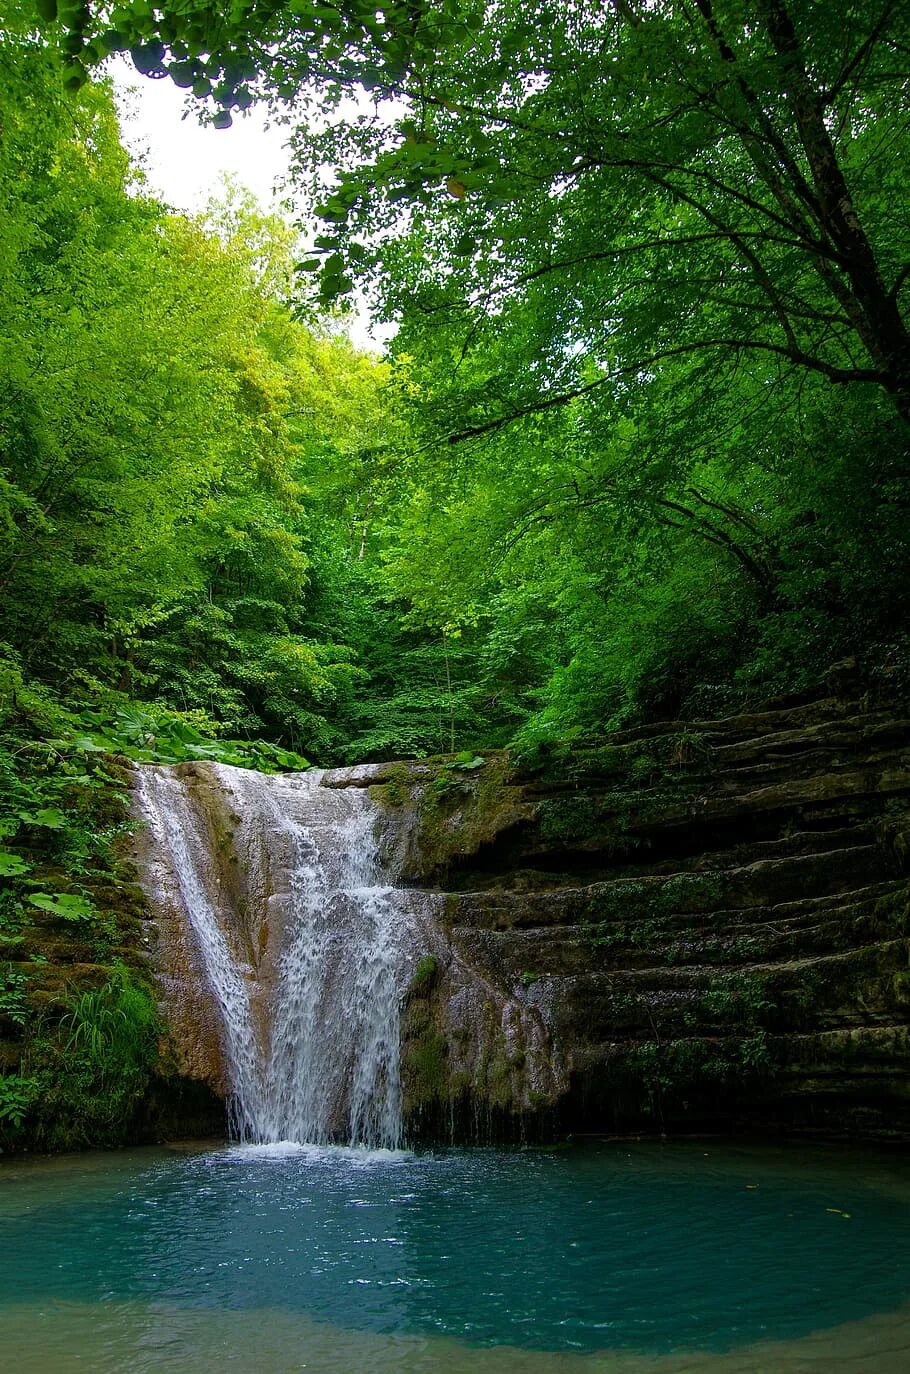 Самурский лес водопад. Кадышский лес водопад. Венсенский лес водопад. Лесное озеро водопадик. Озера водопад лес